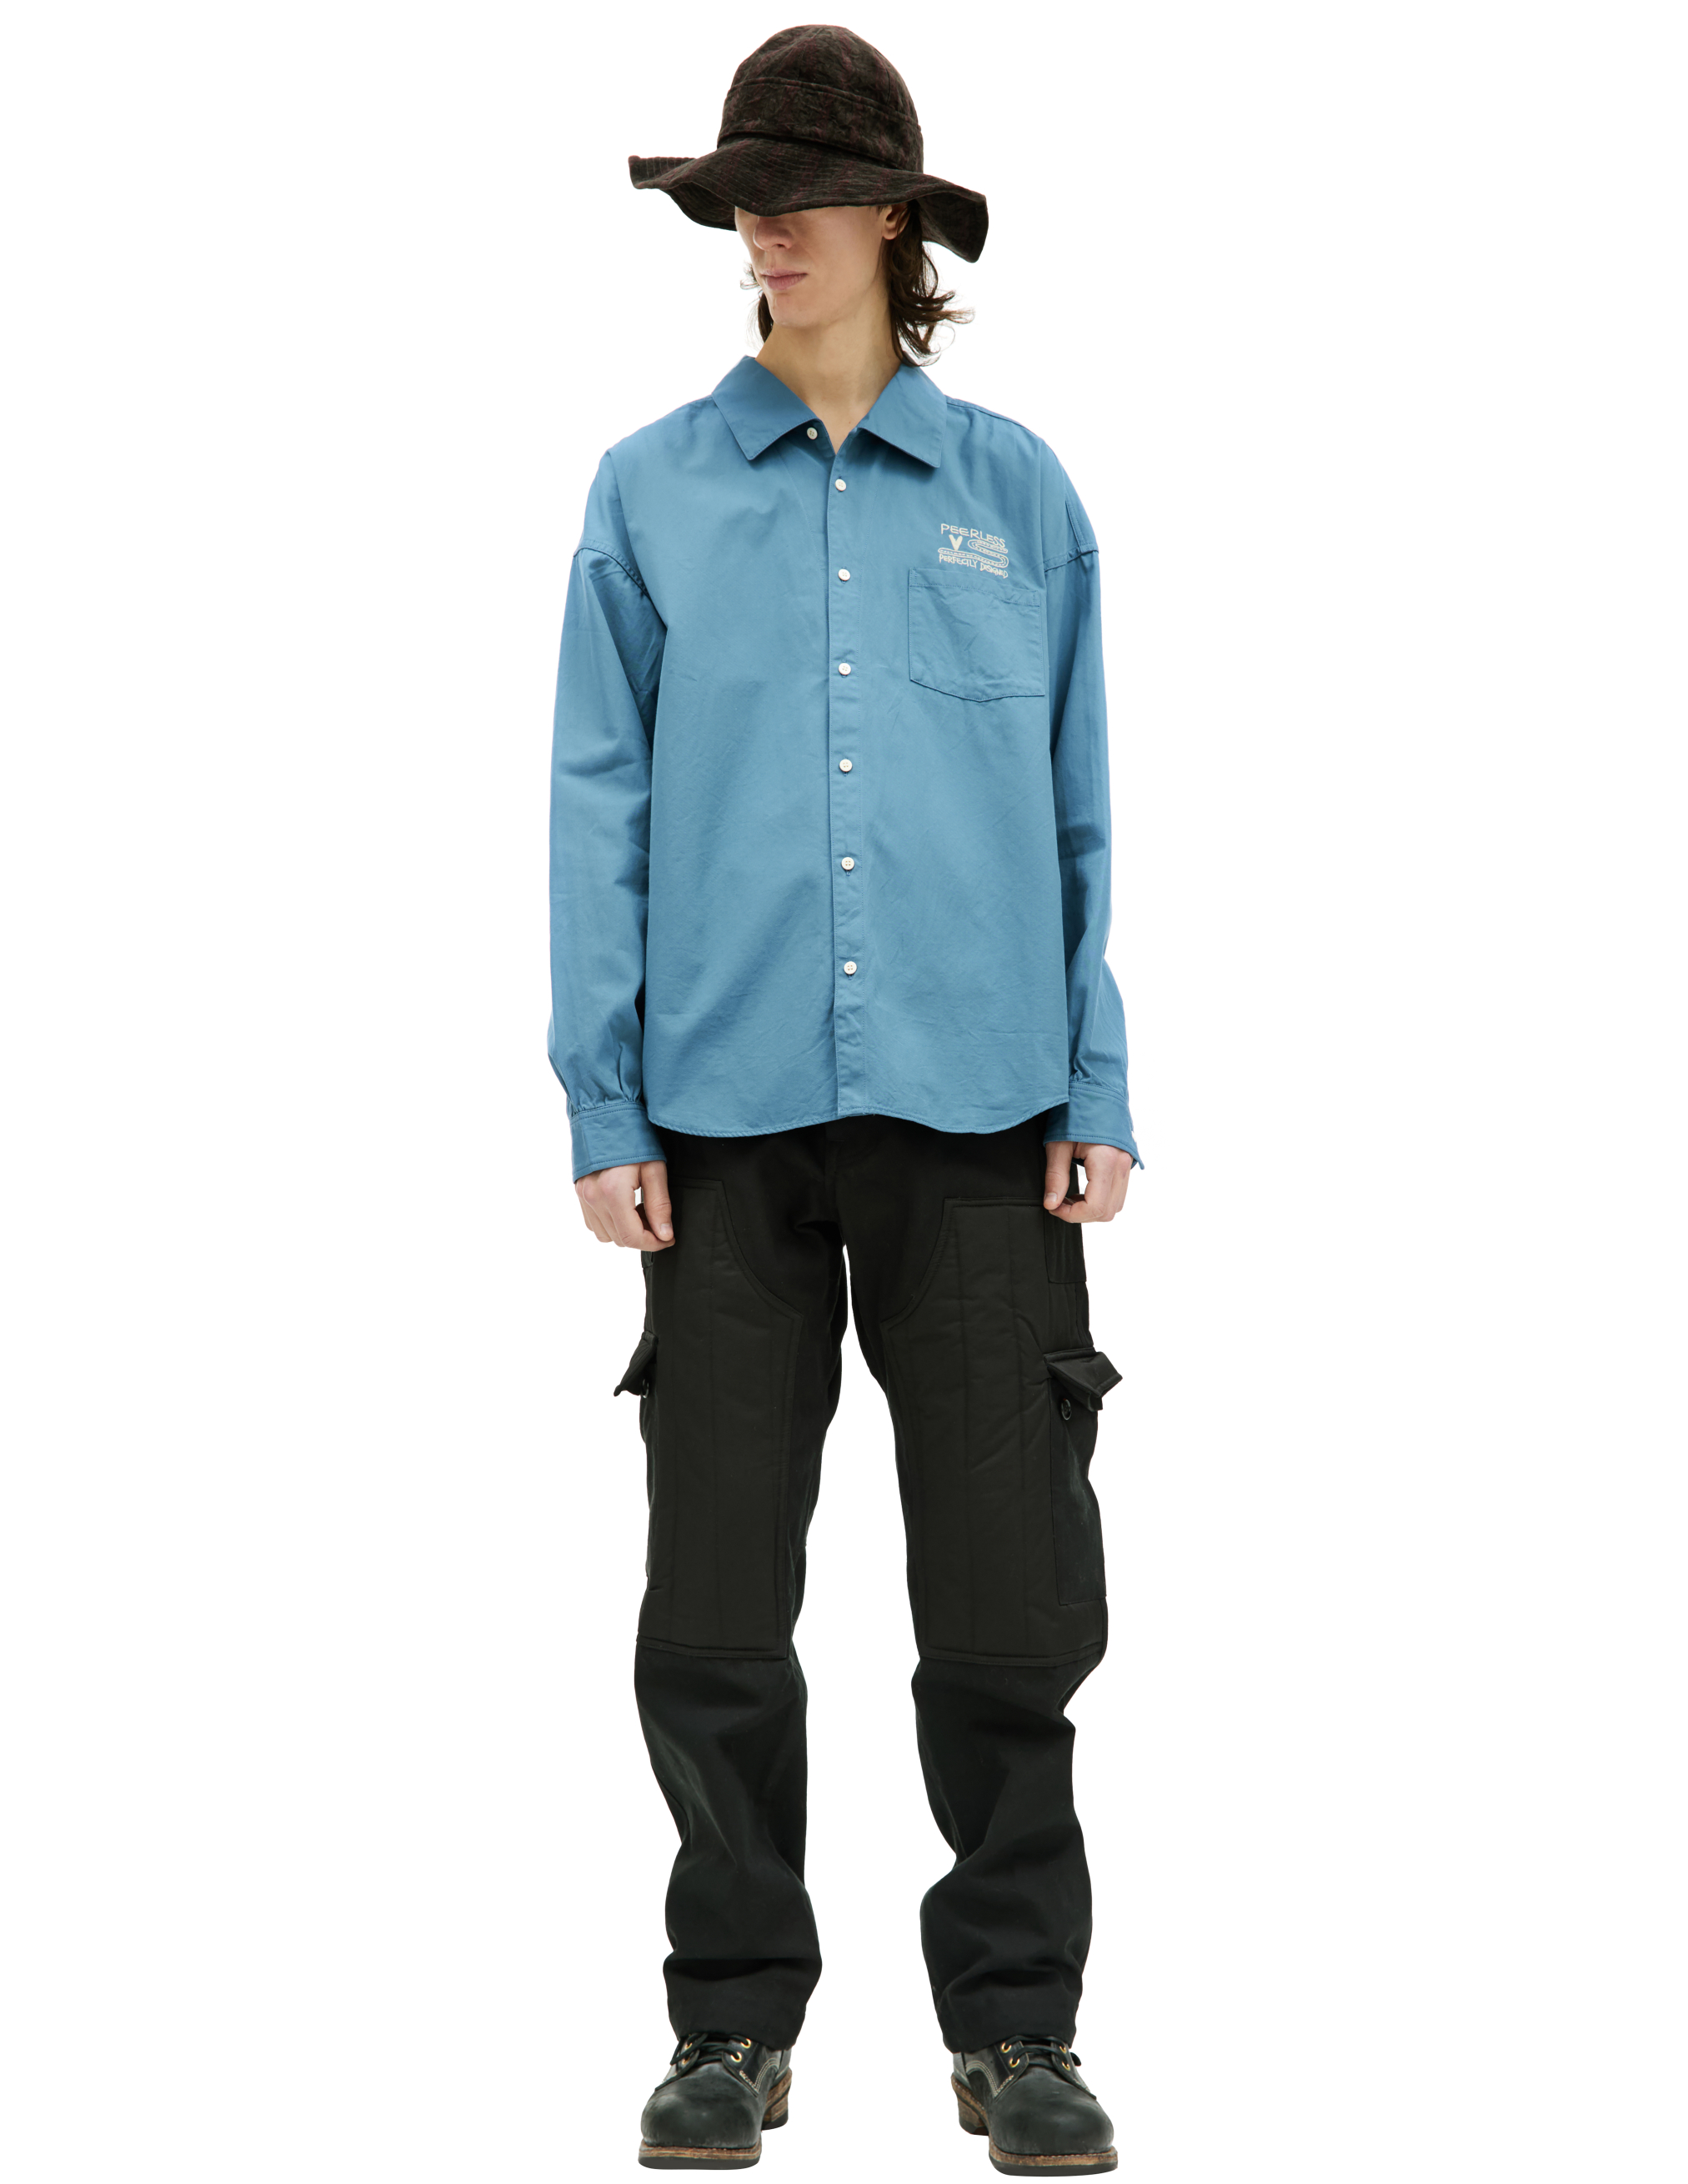 Хлопковая рубашка Palmer с вышивкой visvim 0123205011015, размер 4;5